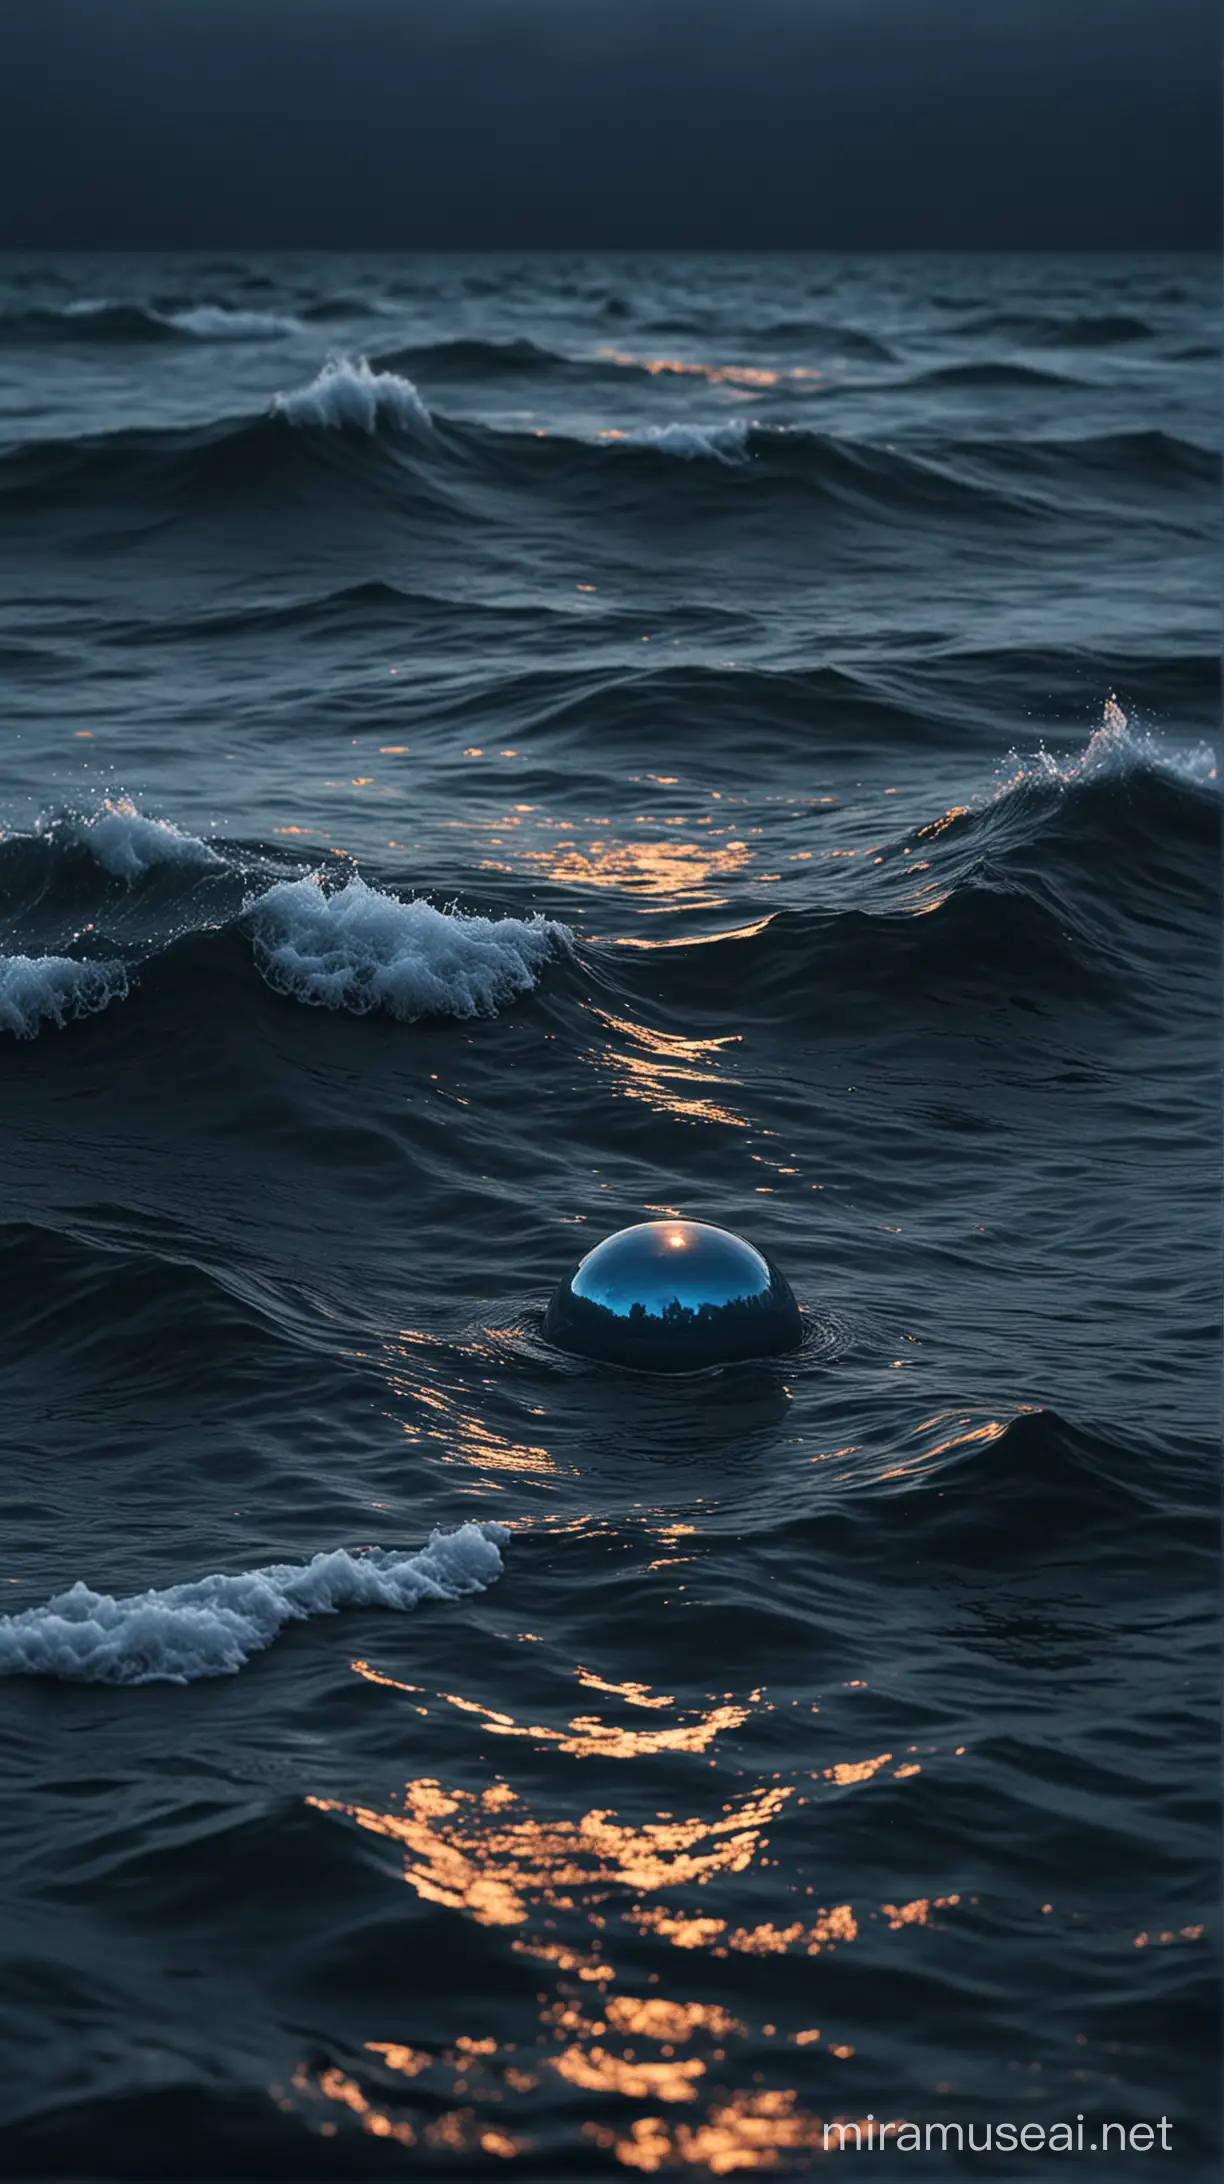 небольшой круглый предмет, плывет по поверхности темного синего штормового моря, светится цветным, реалистично, мрачная атмосфера, мистика